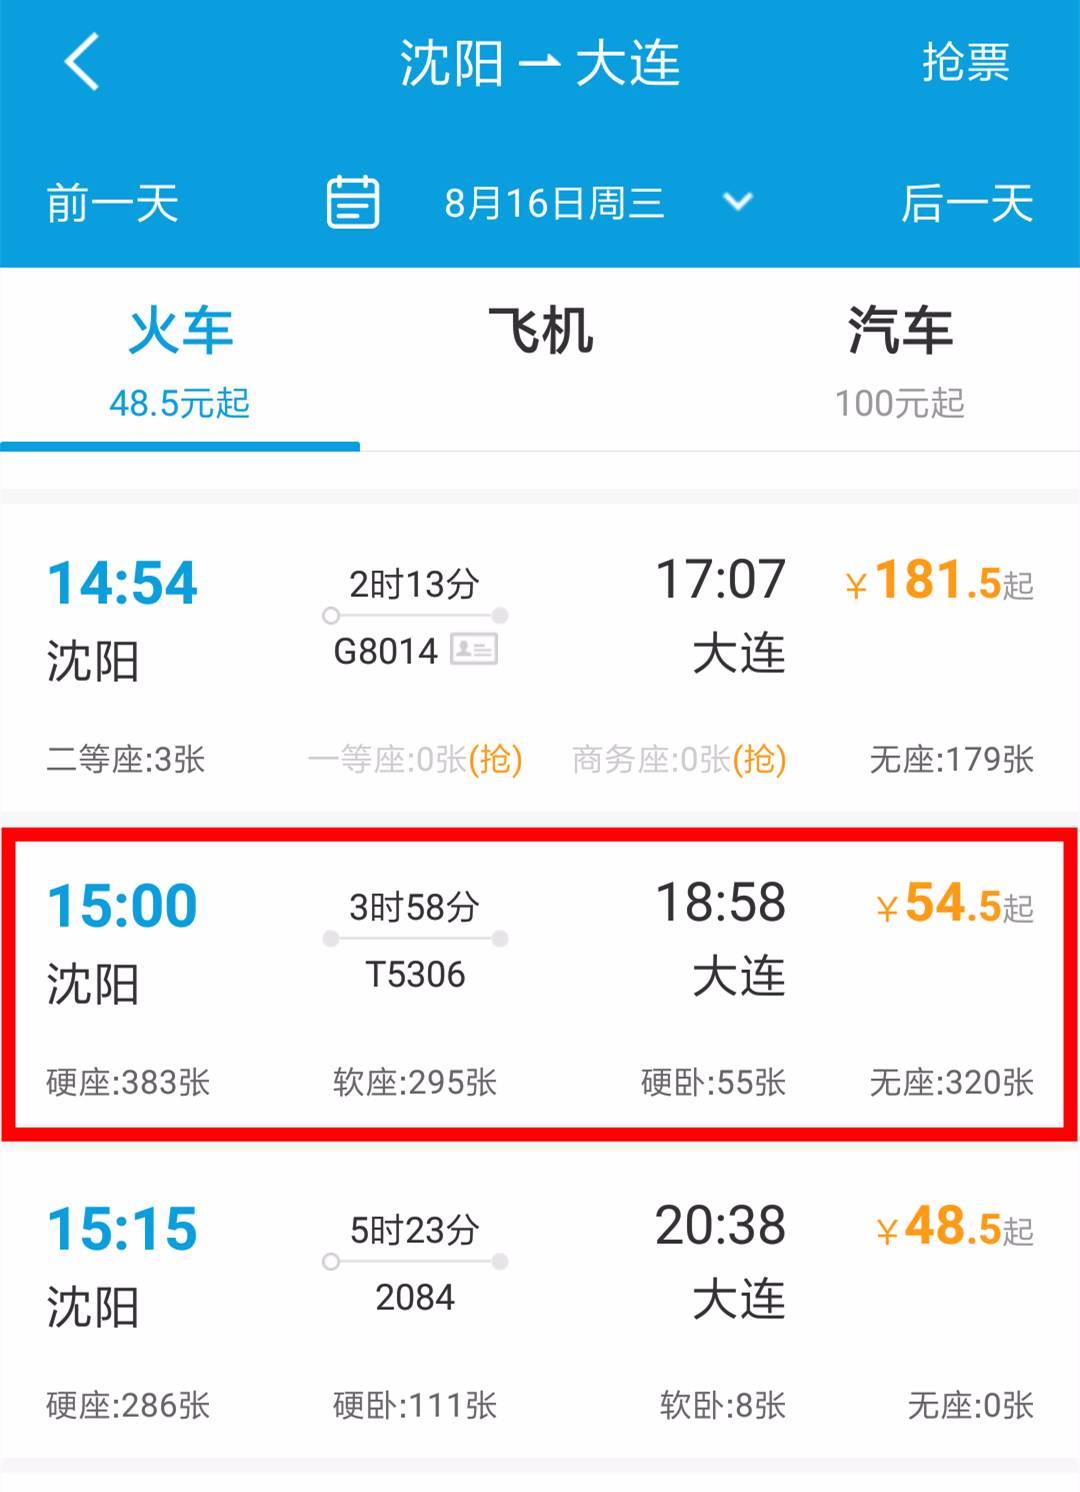 未来沈阳到北京,到大连,到朝阳更快更方便!